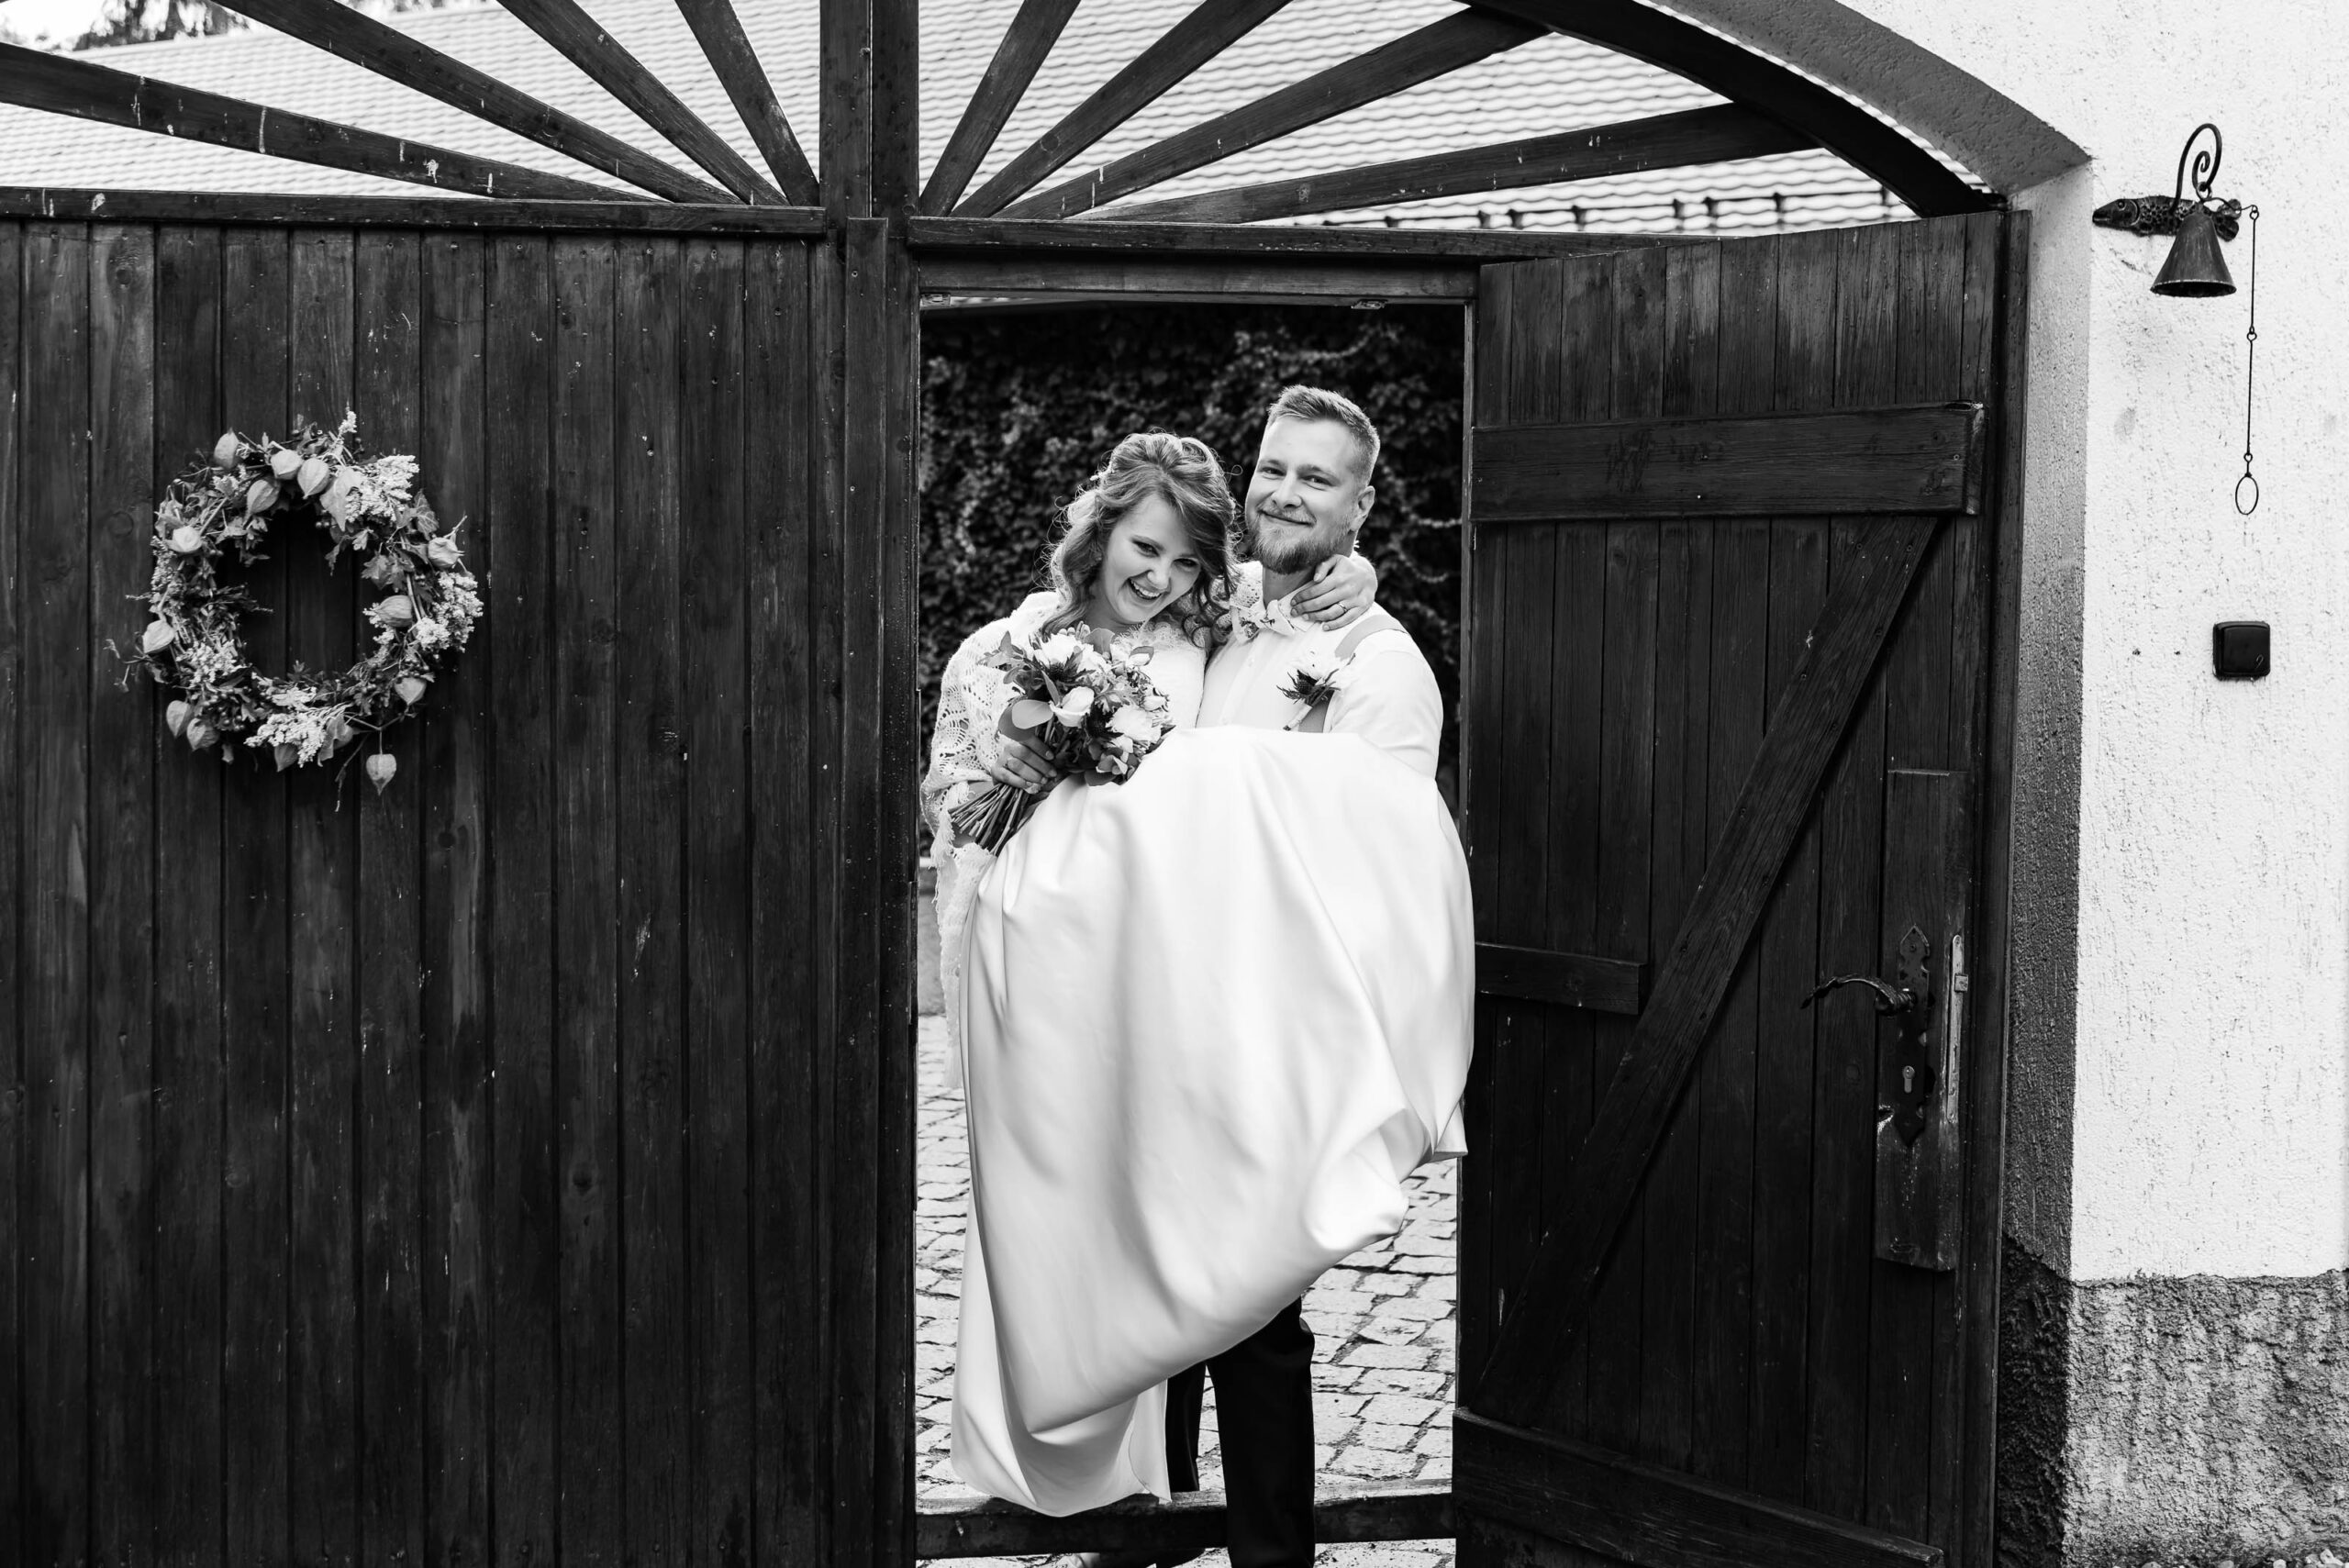 Svatební focení na samotě u lesa | svatební fotograf | Patrik Schöber